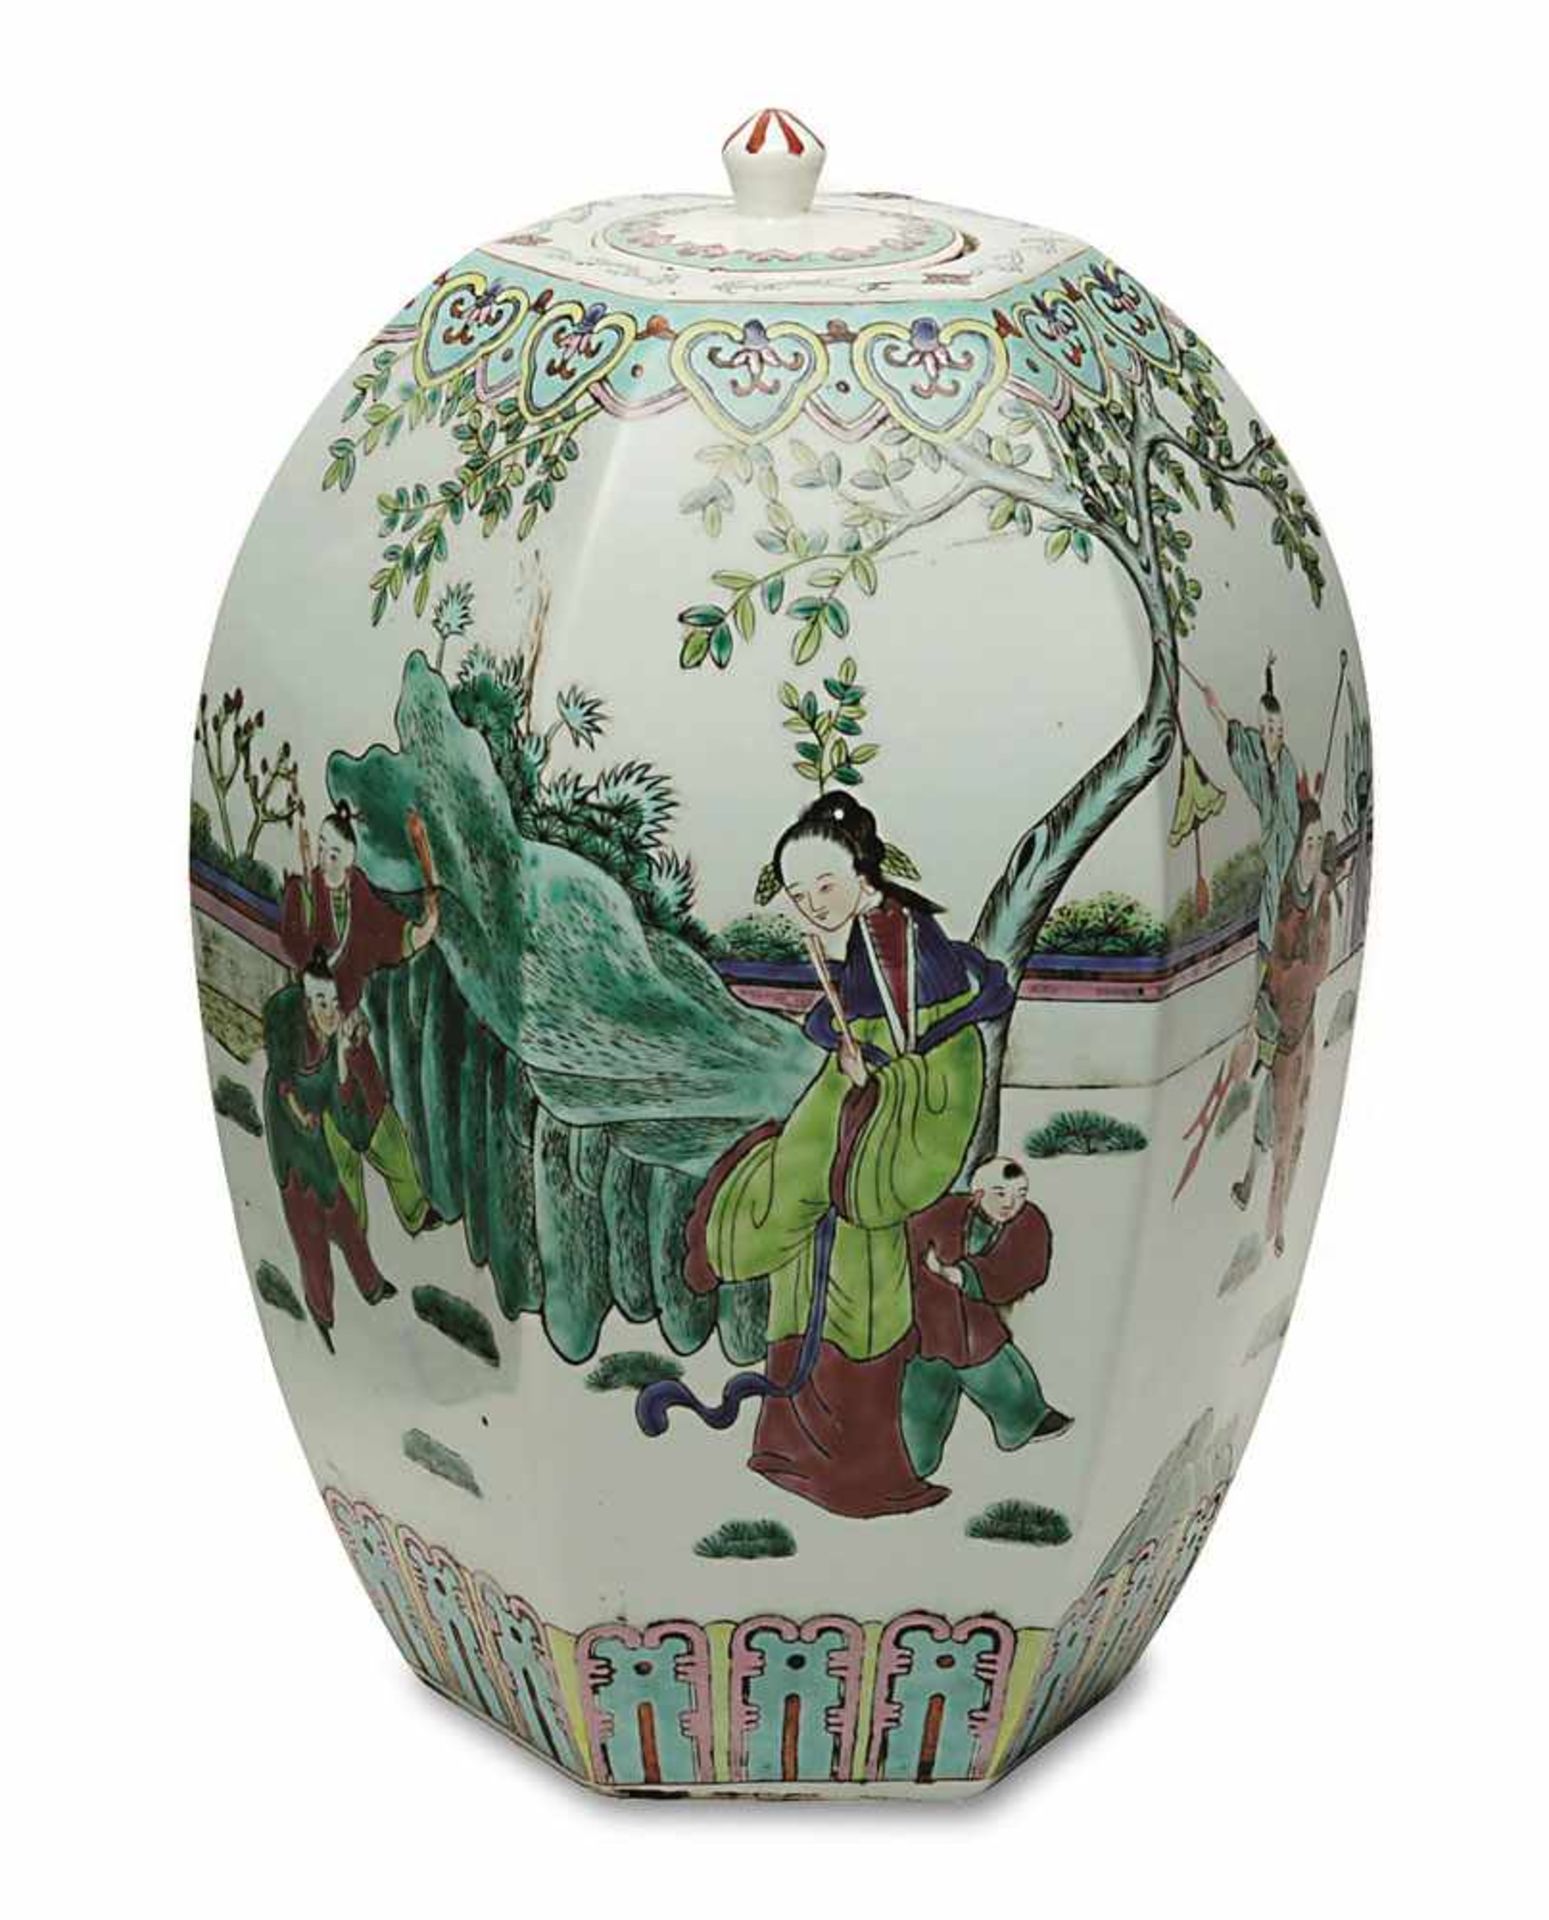 Deckelvase China Porzellan. Eiförmig gebauchte, sechsseitige Vase mit flachem Deckel. Bunter